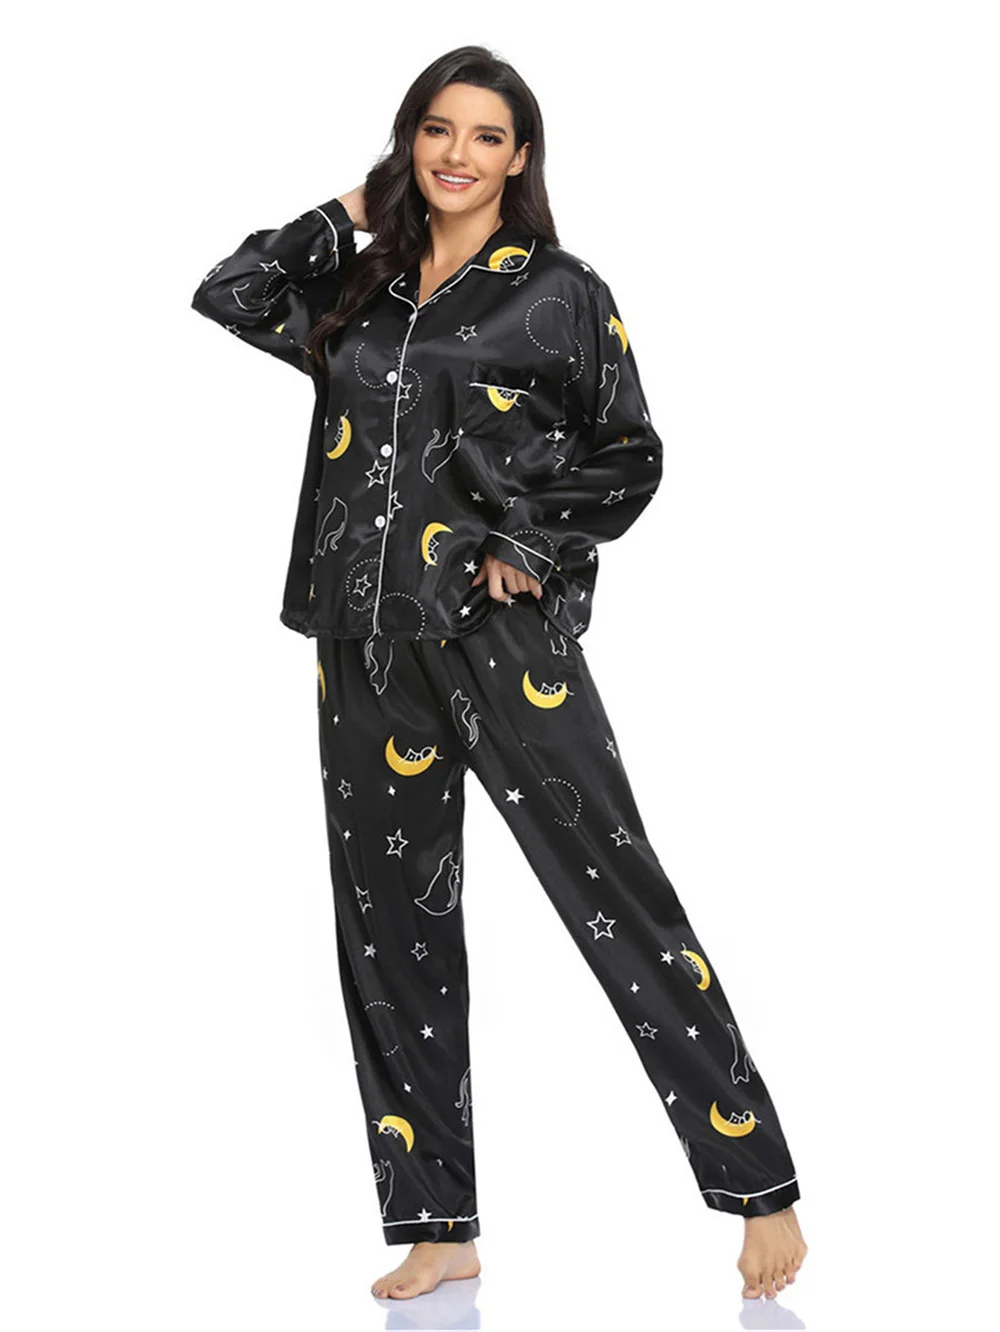 

Женский пижамный комплект из 2 предметов, одежда для сна с принтом пятен, звезд, длинным рукавом и брюки на пуговицах, домашняя одежда для отд...